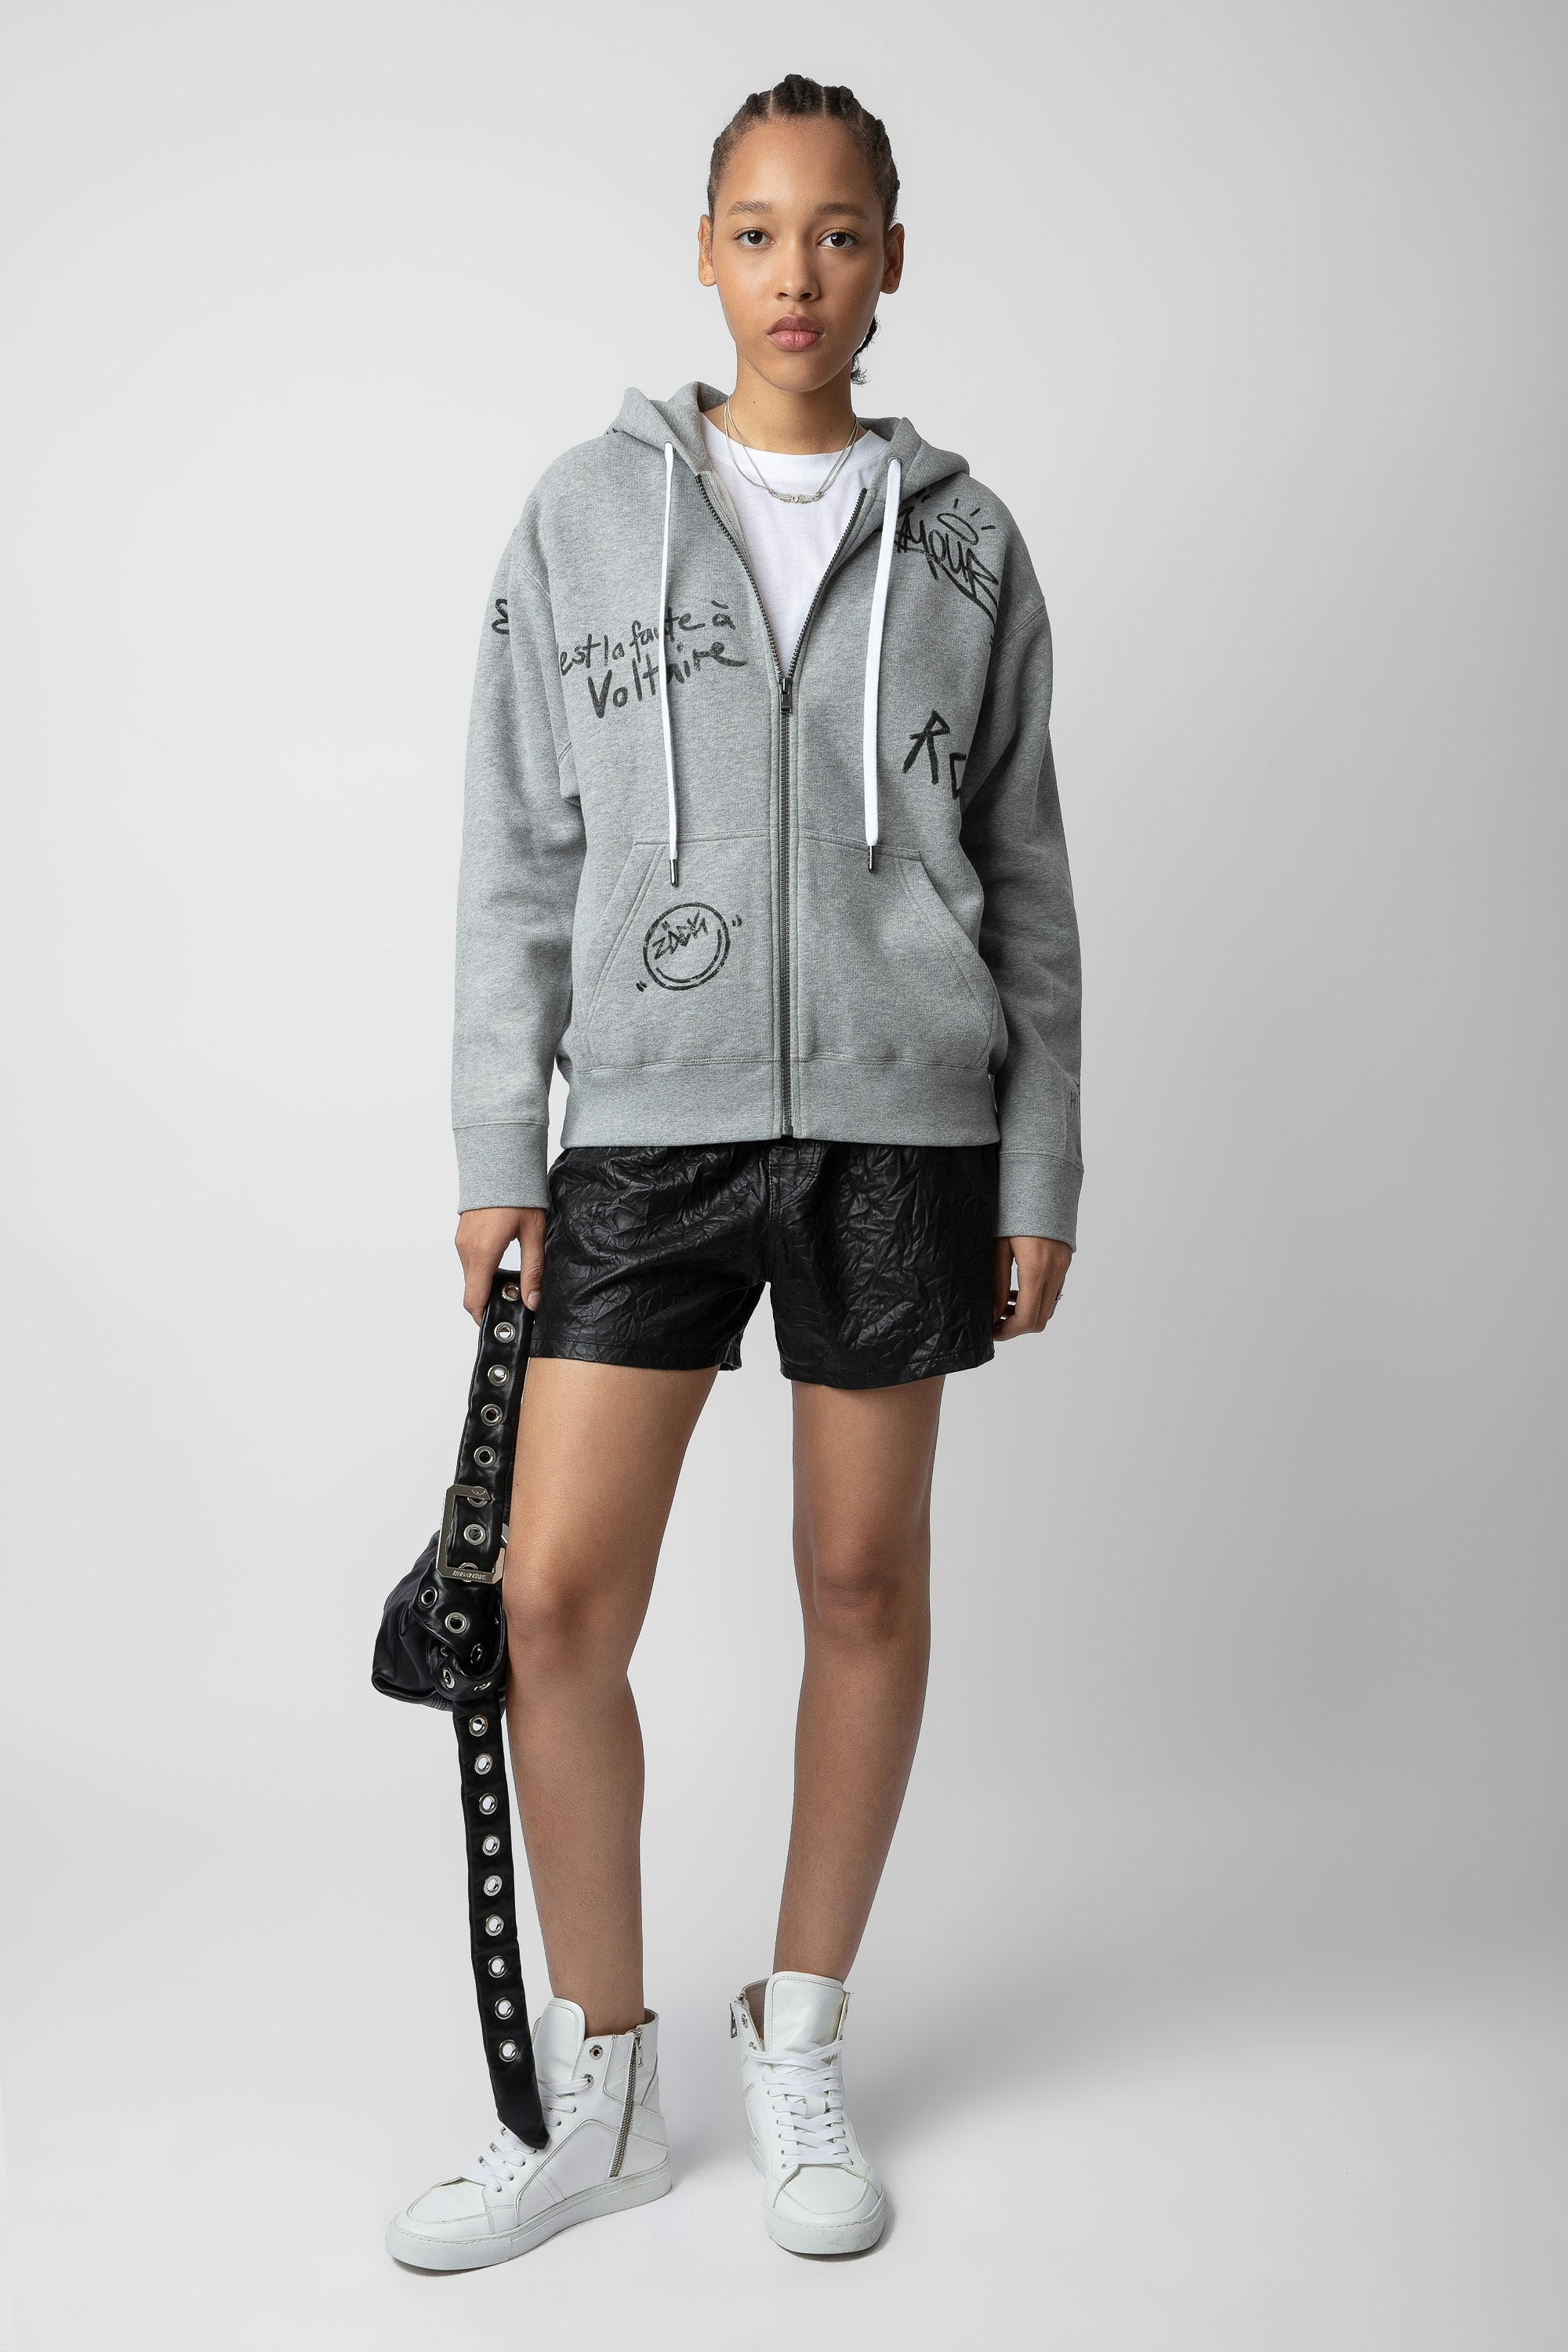 Spencer Hoodie - Women’s marl grey zip-up hoodie with Zadig&Voltaire manifesto tags print.